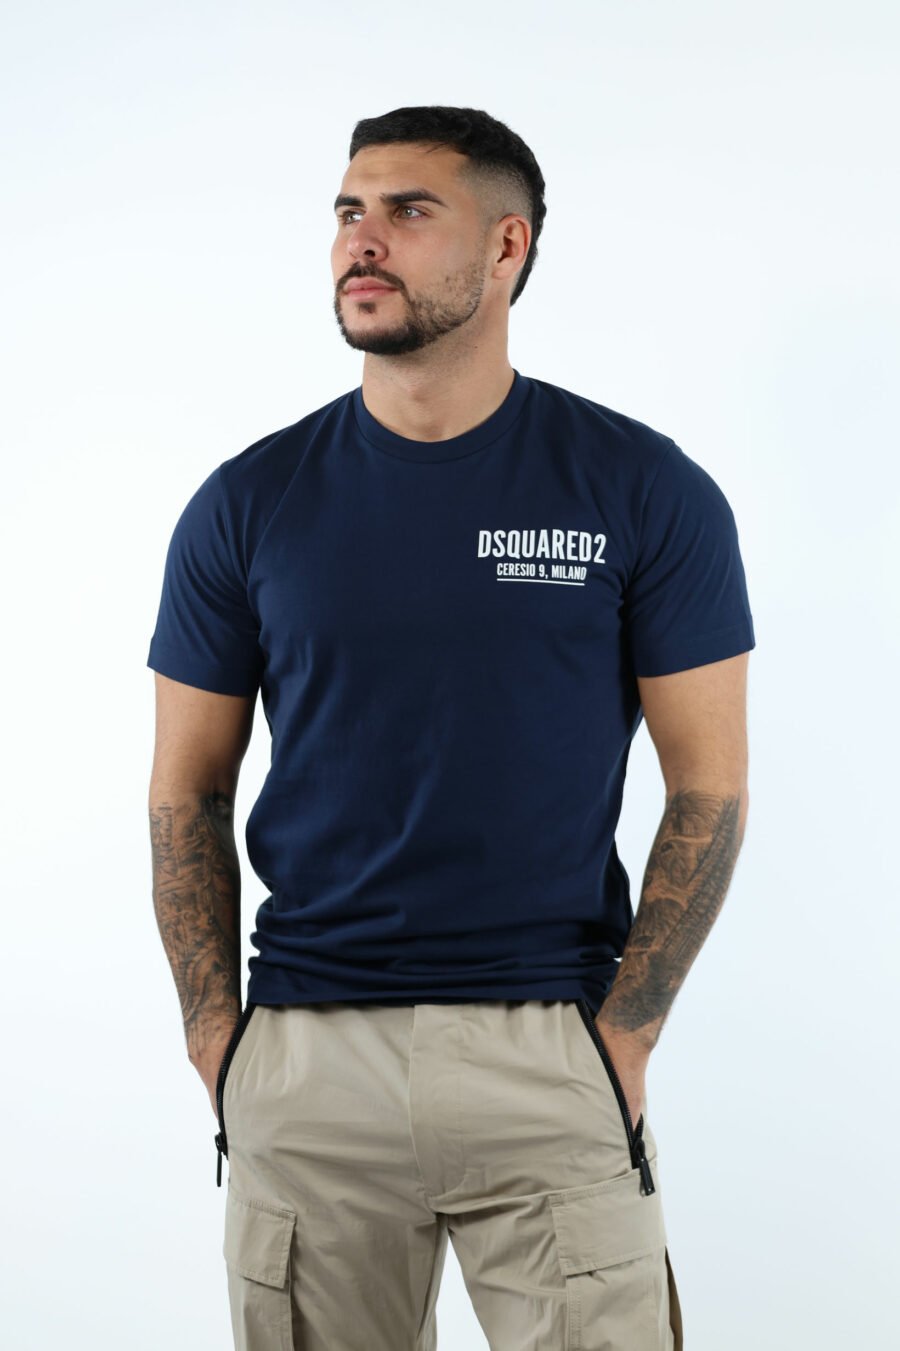 Camiseta azul oscura con minilogo "ceresio 9, milano" - 107099